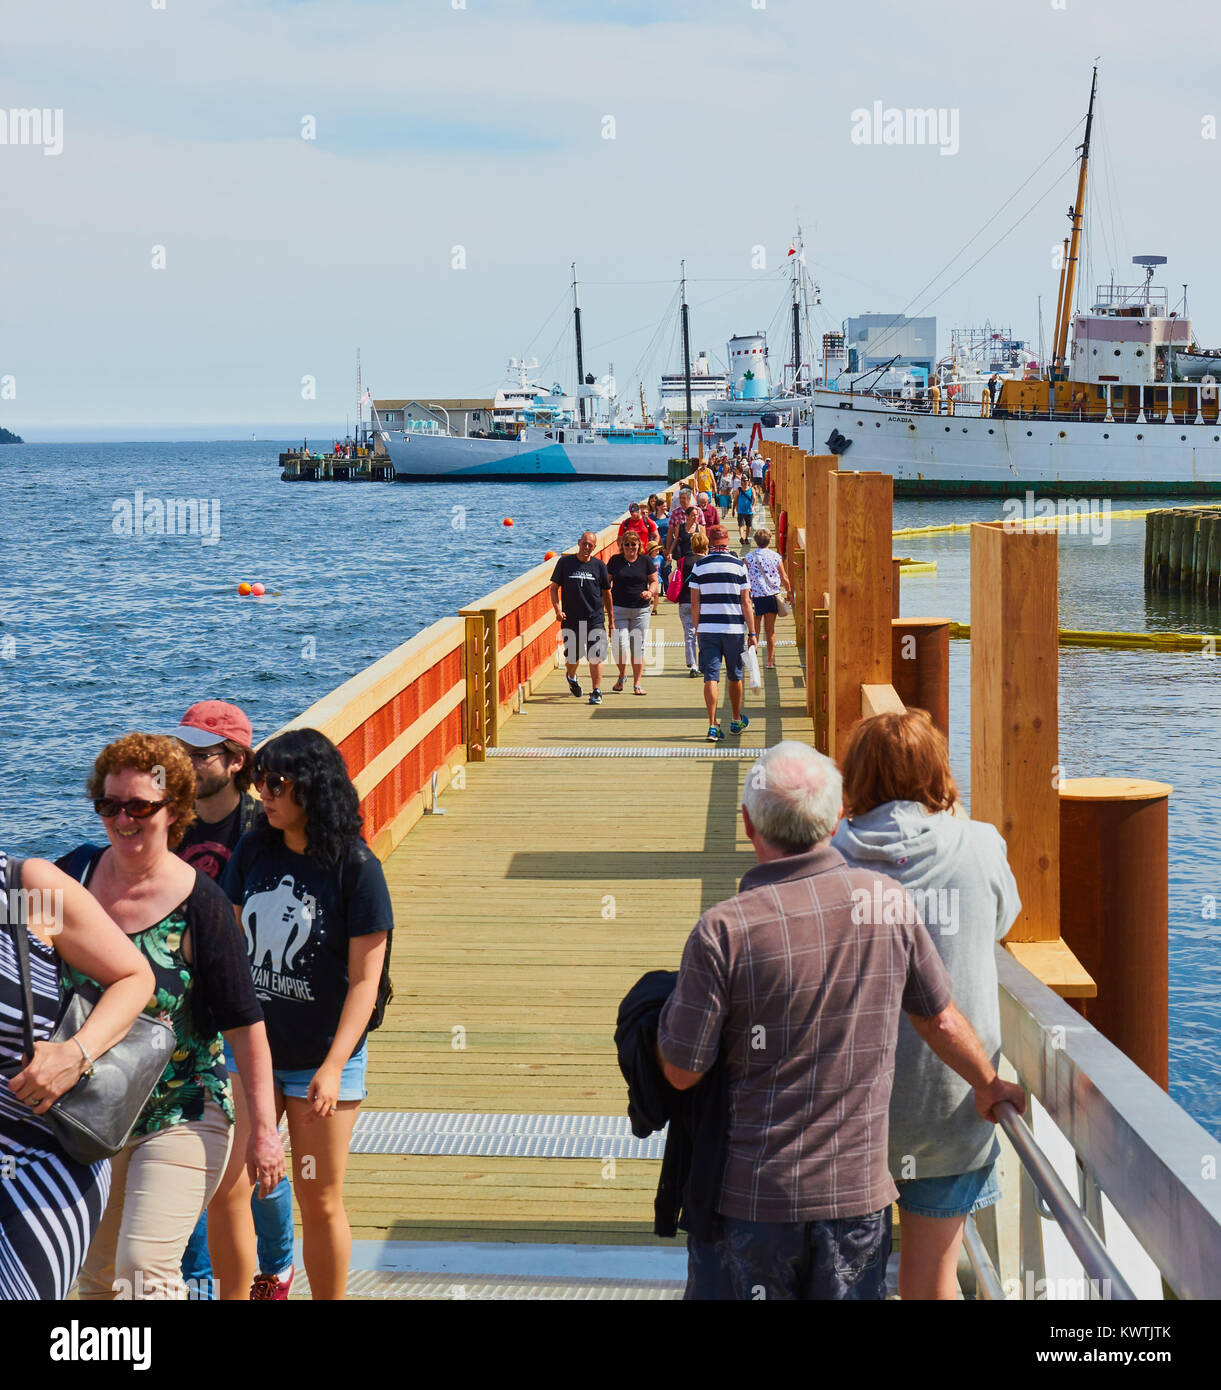 Les touristes marche sur Halifax waterfront boardwalk, Halifax, Nouvelle-Écosse, Canada Banque D'Images